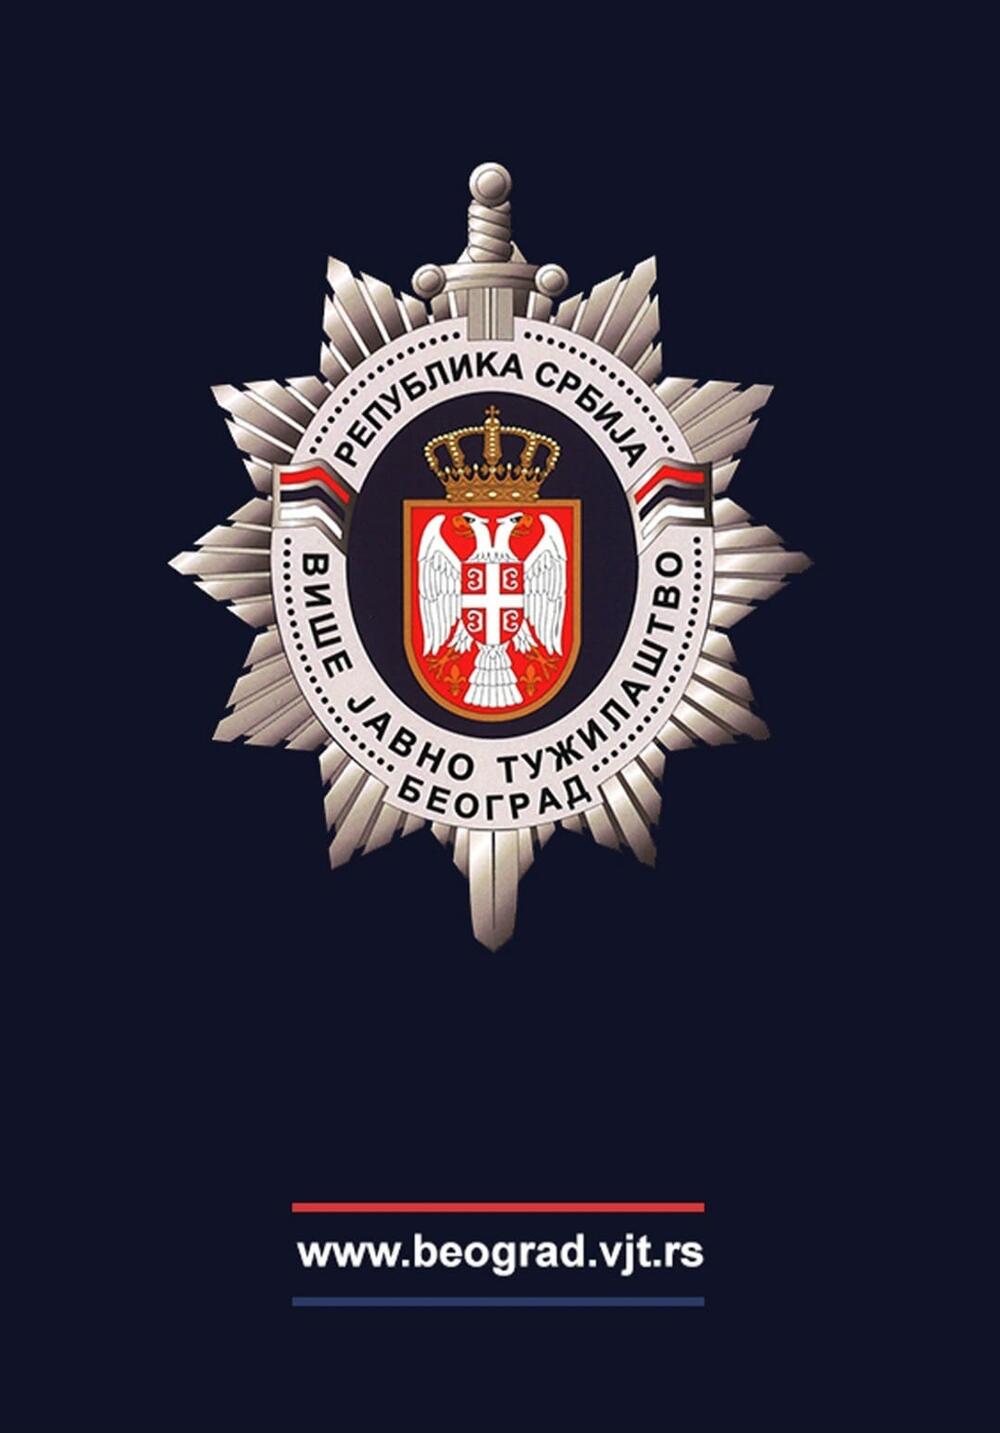 Više javno tužilaštvo u Beogradu, Logo